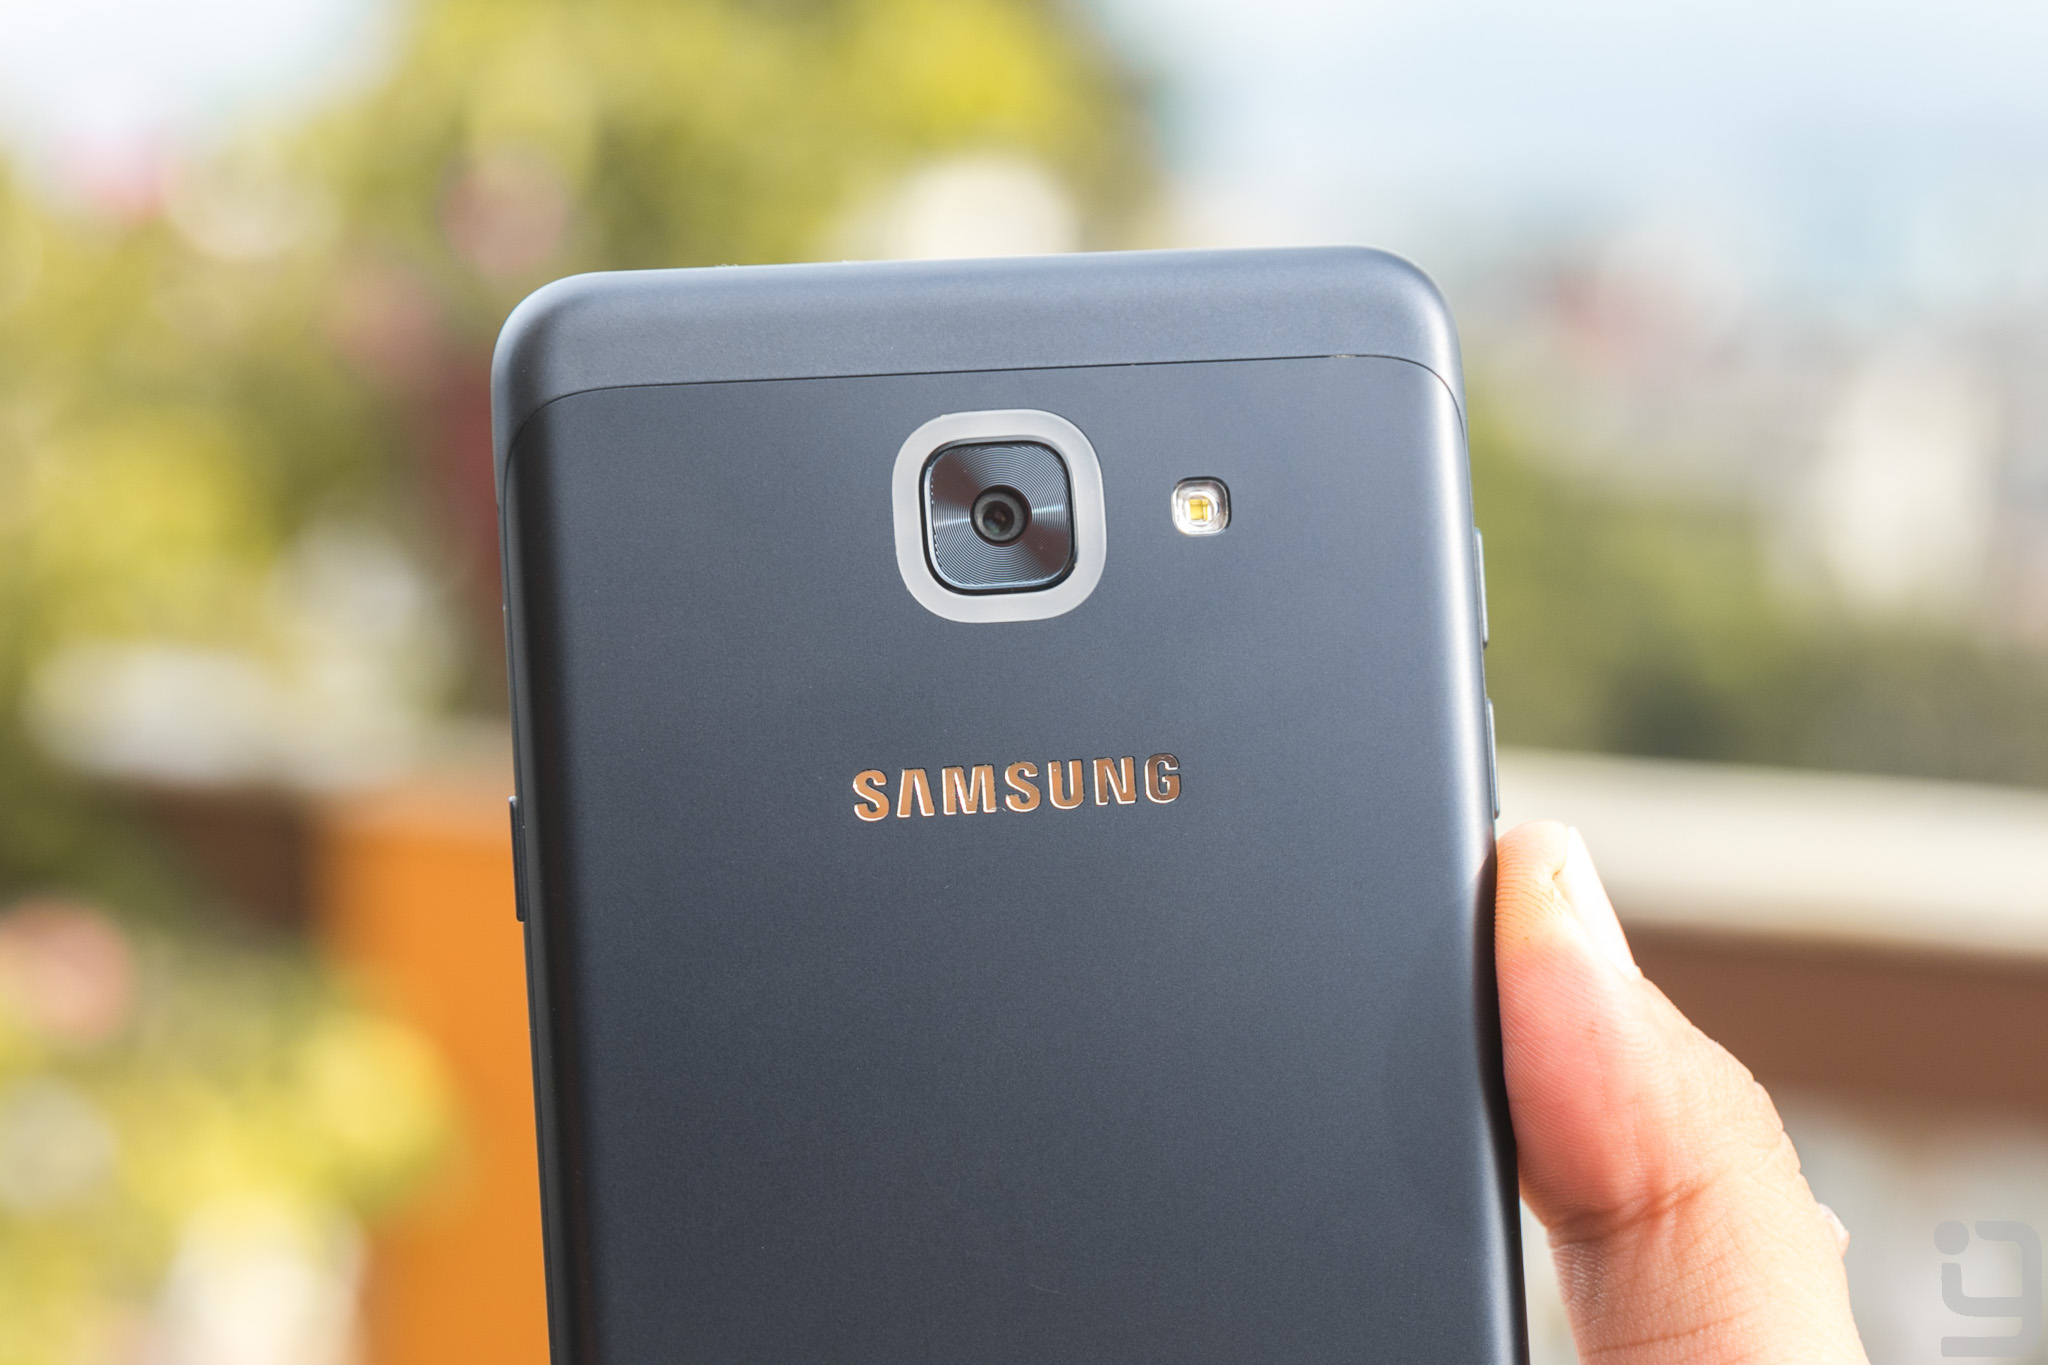 Samsung Galaxy J7 Max Camera review